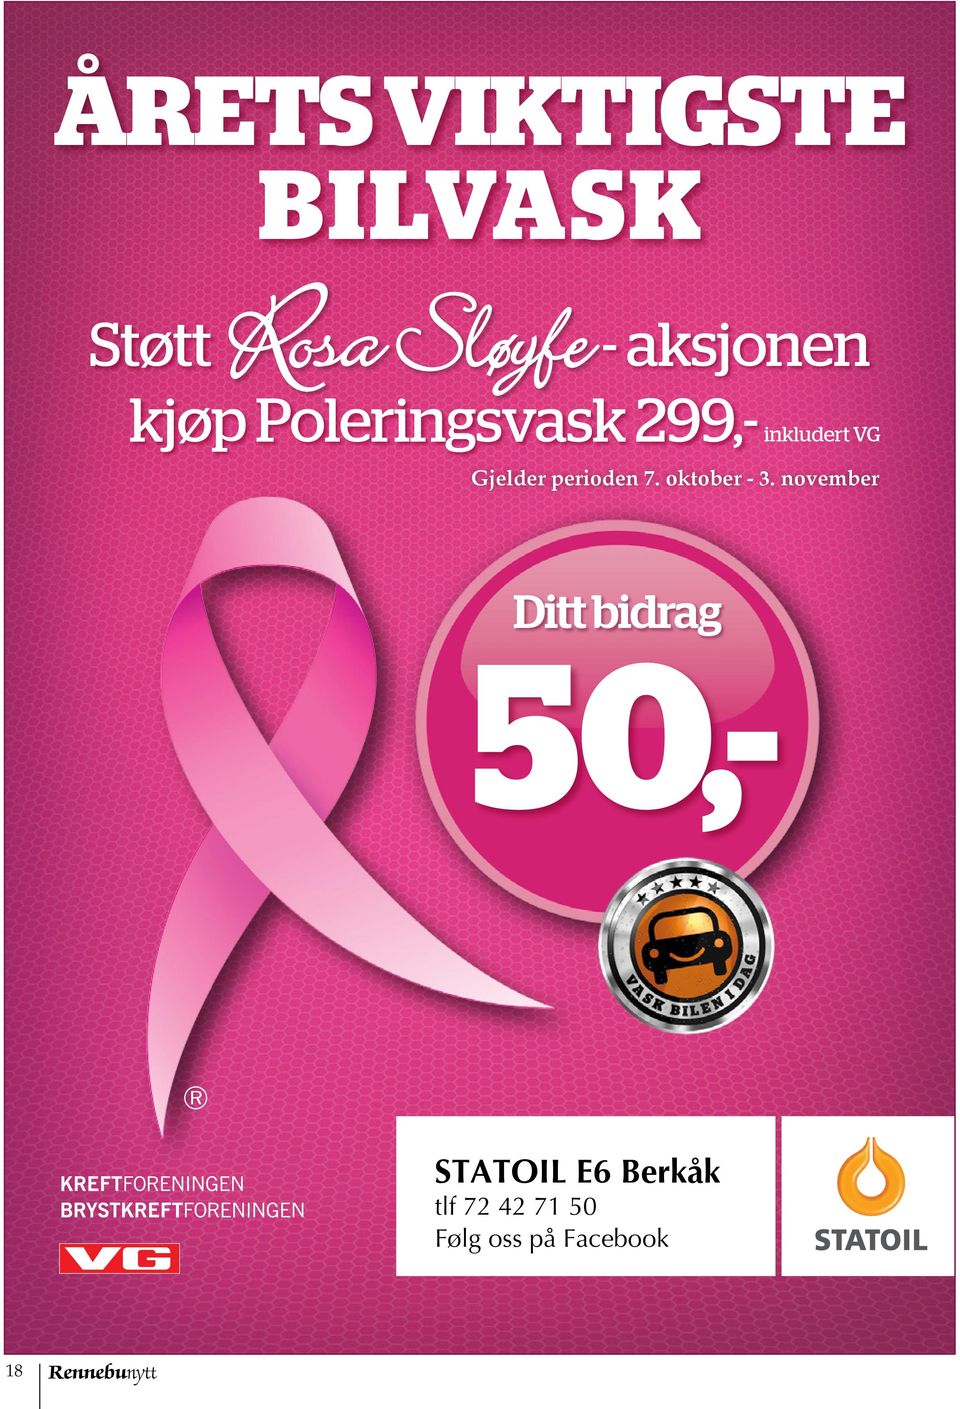 november Ditt bidrag 50,- STATOIL ABILDSØ STATOIL E6 Berkåk